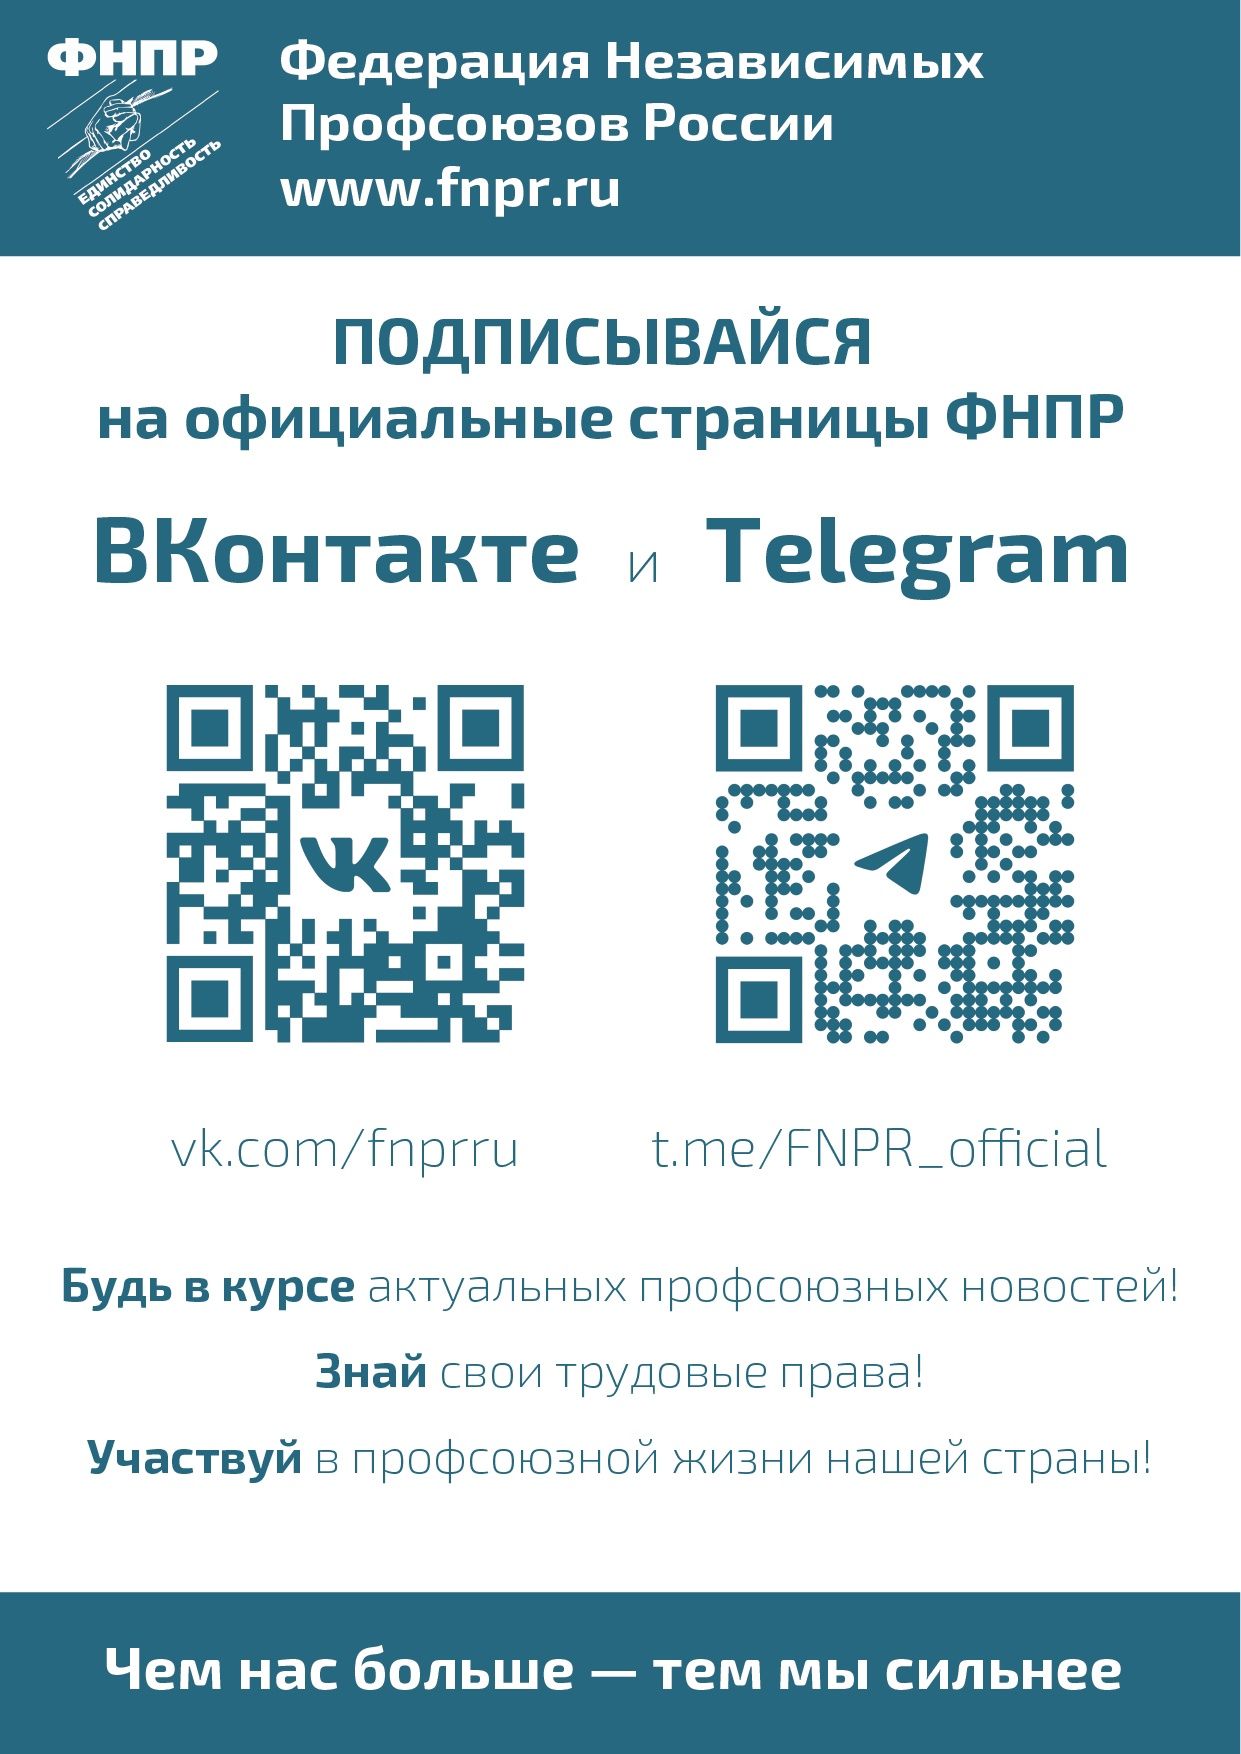 Подписывайтесь на официальные каналы ФНПР и ФПСО в социальных сетях Telegram и ВКонтакте